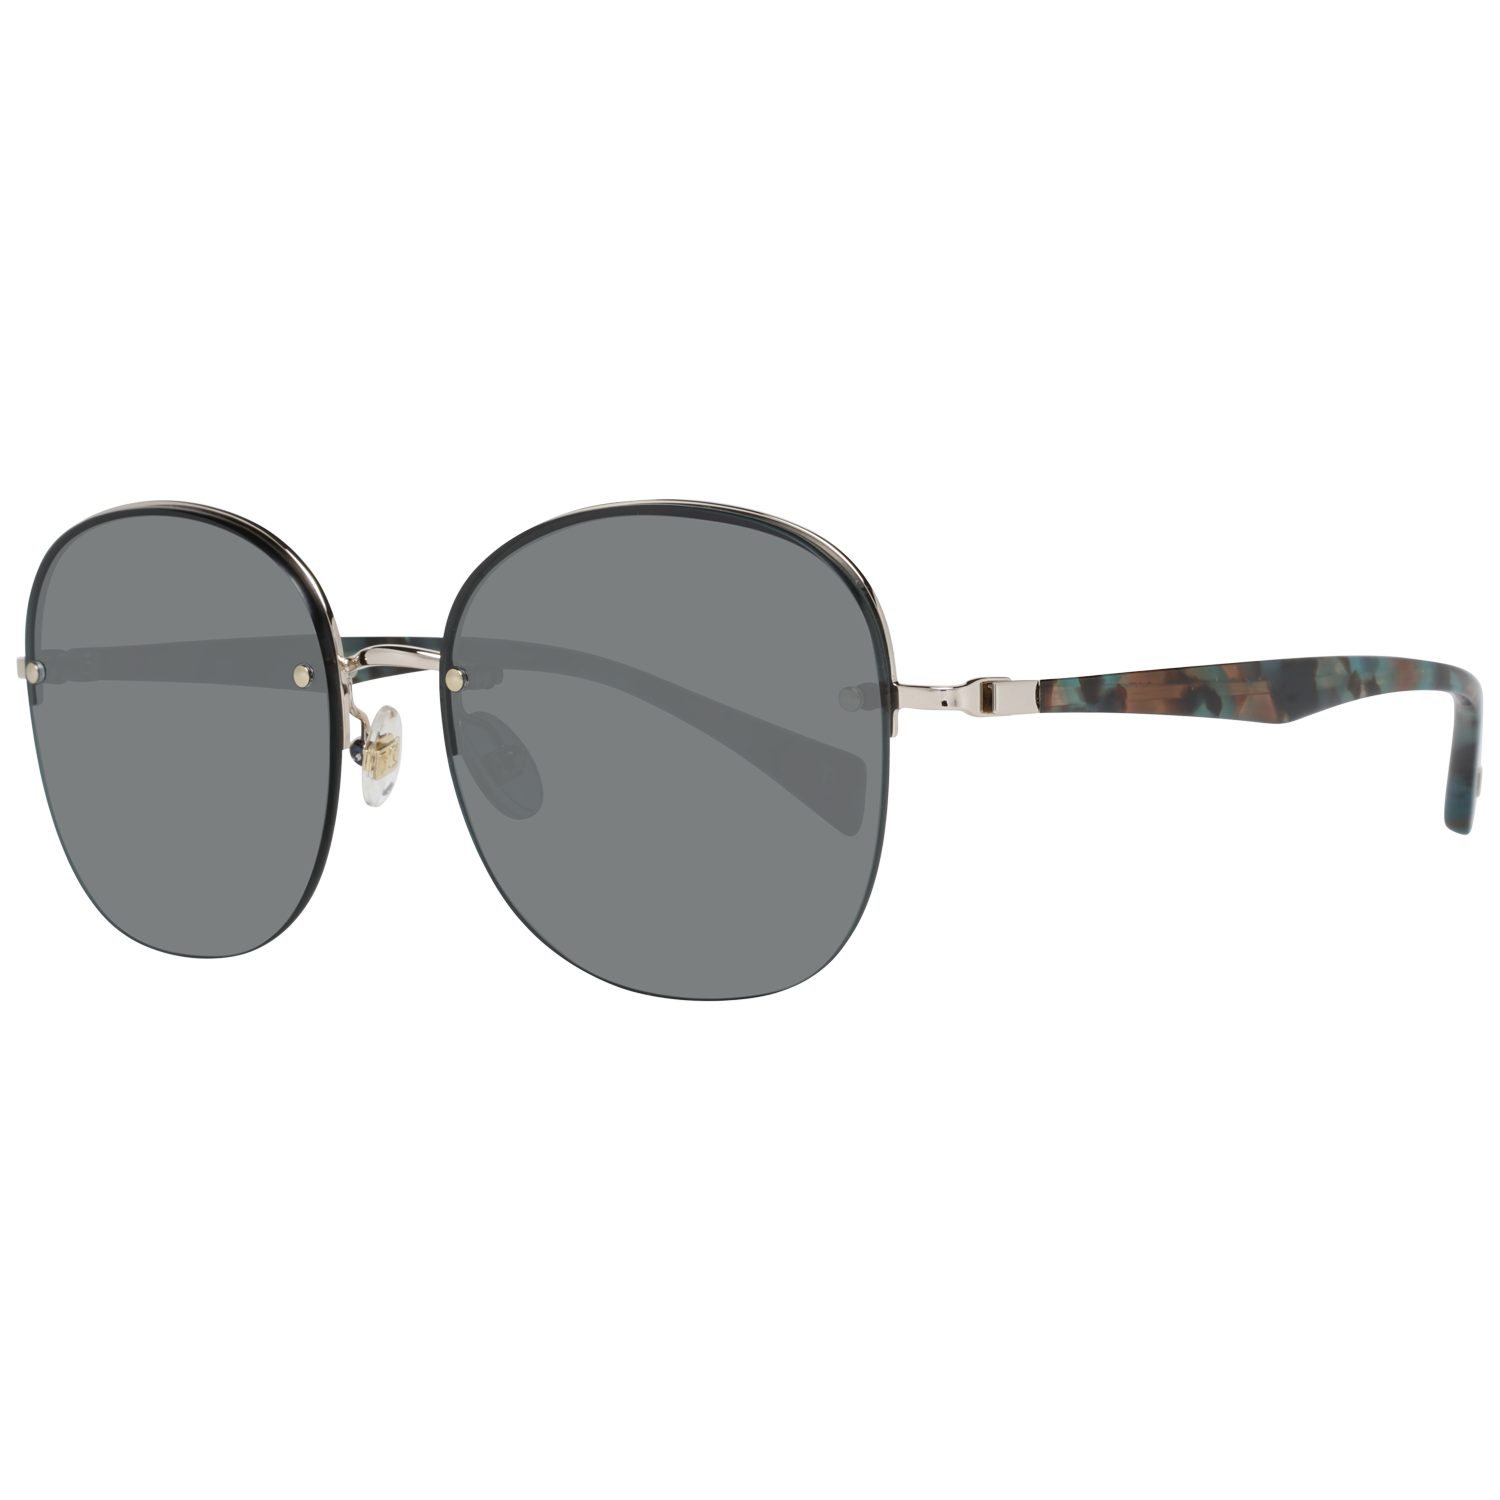 Yohji Yamamoto Sunglasses YS7003 400 56 Gold